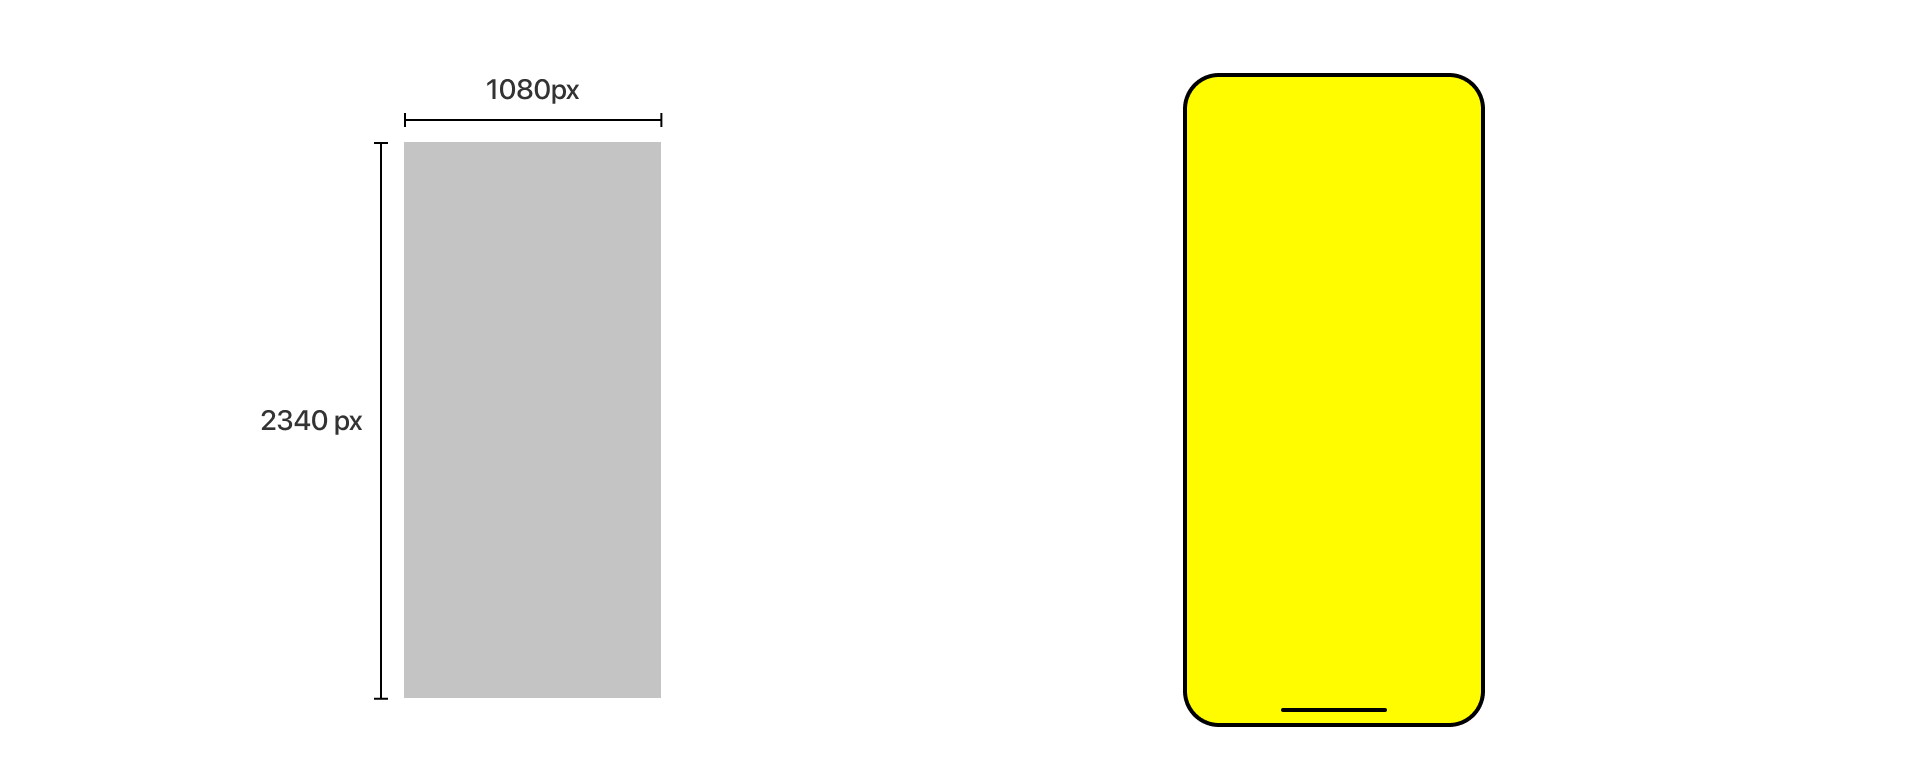 Mobile screen size comparison with measurements for portrait orientation.